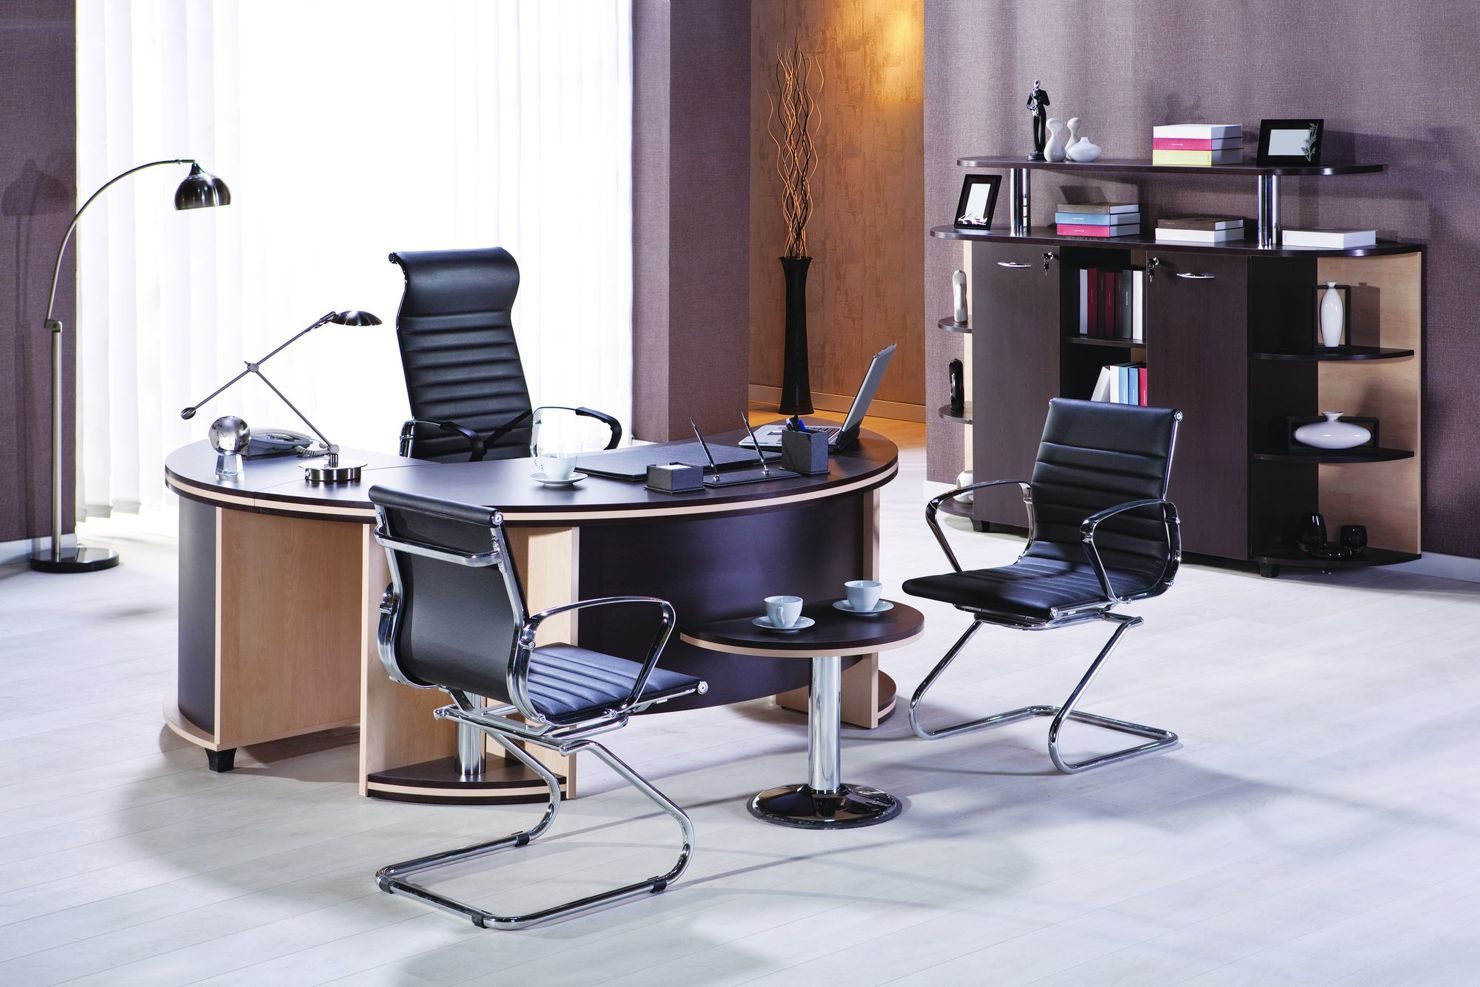 Офисных мебель – офисная мебель кресло и стульев. Иностранный партер компания ООО «МЕТТА» город Уфа, Башкирия